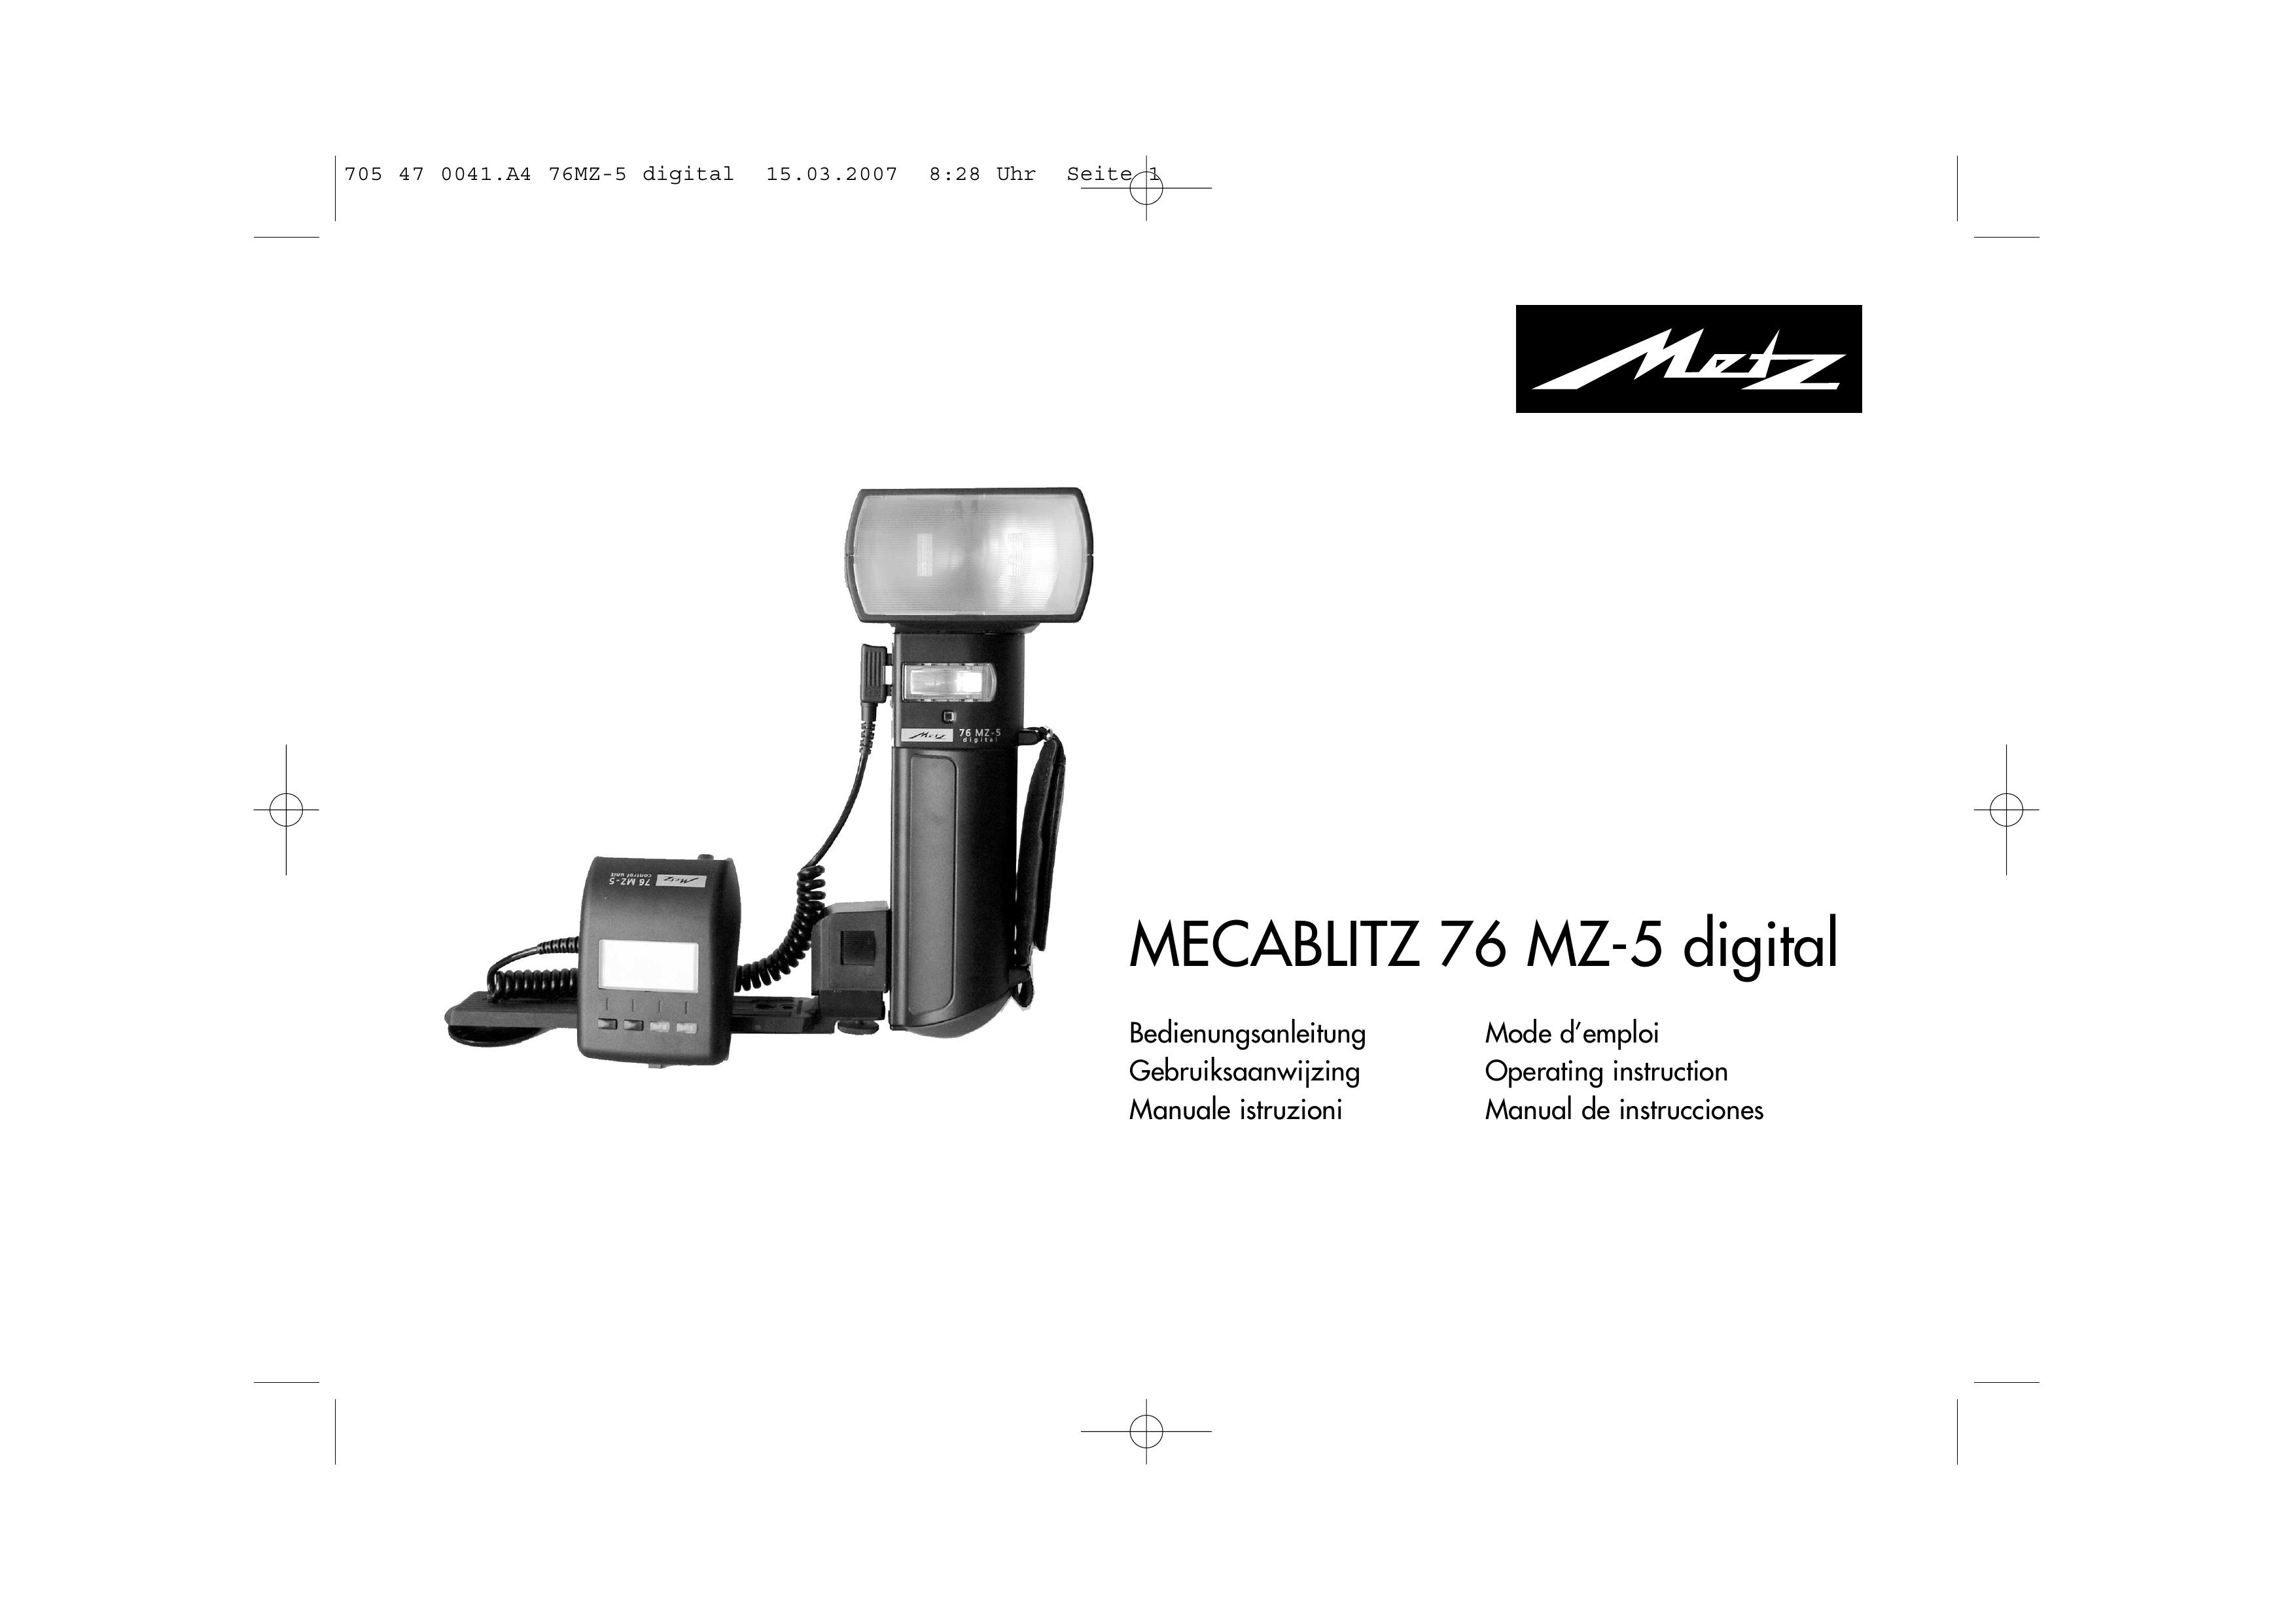 Metz 76 MZ-5 Digital Camera User Manual